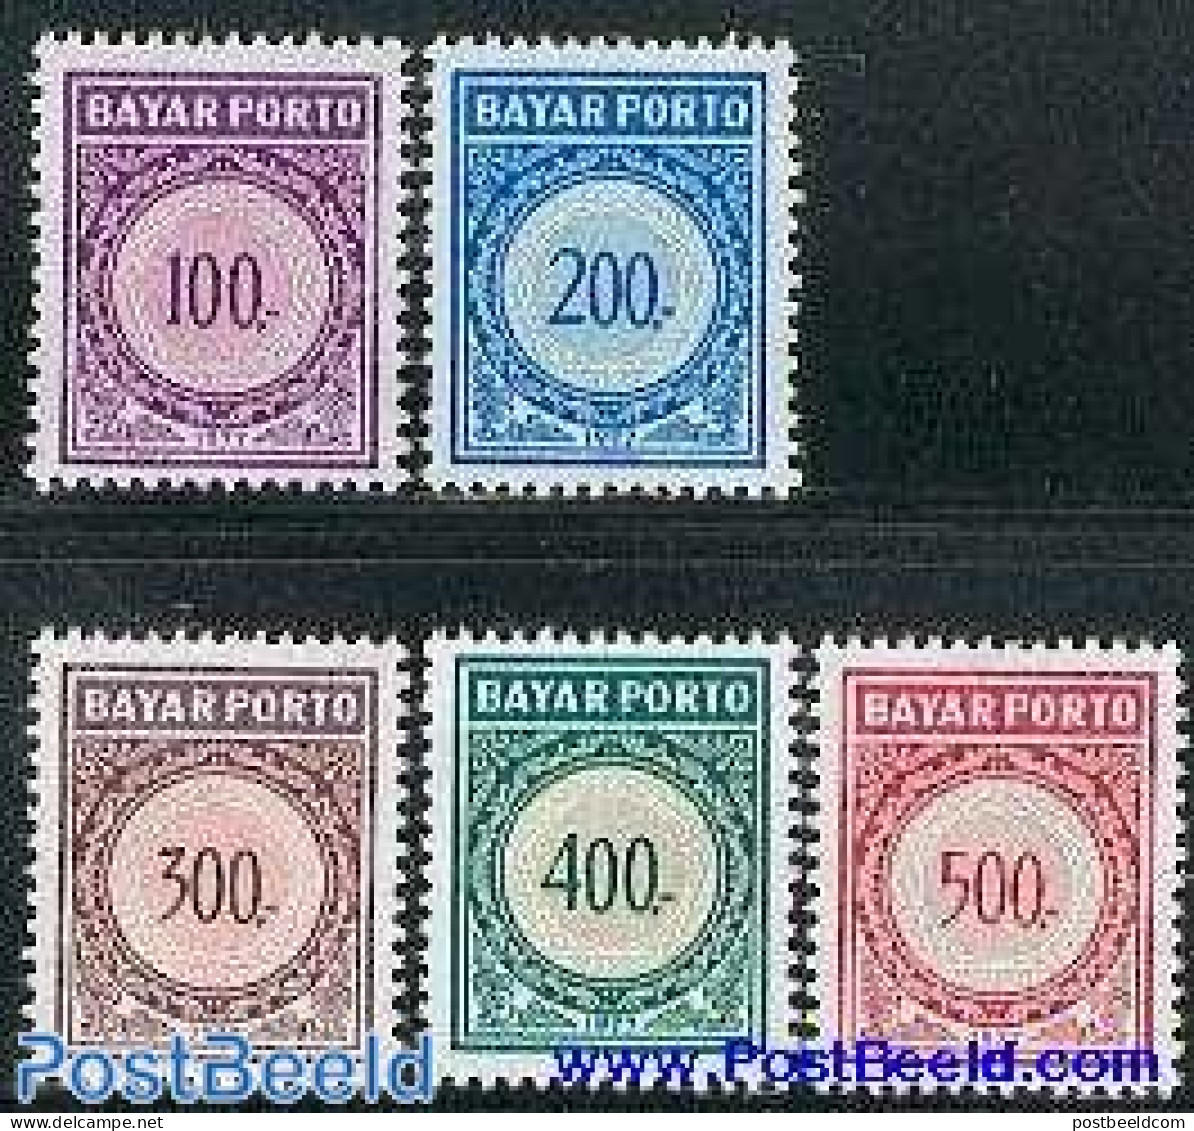 Indonesia 1977 Postage Due 5v, Mint NH - Indonésie